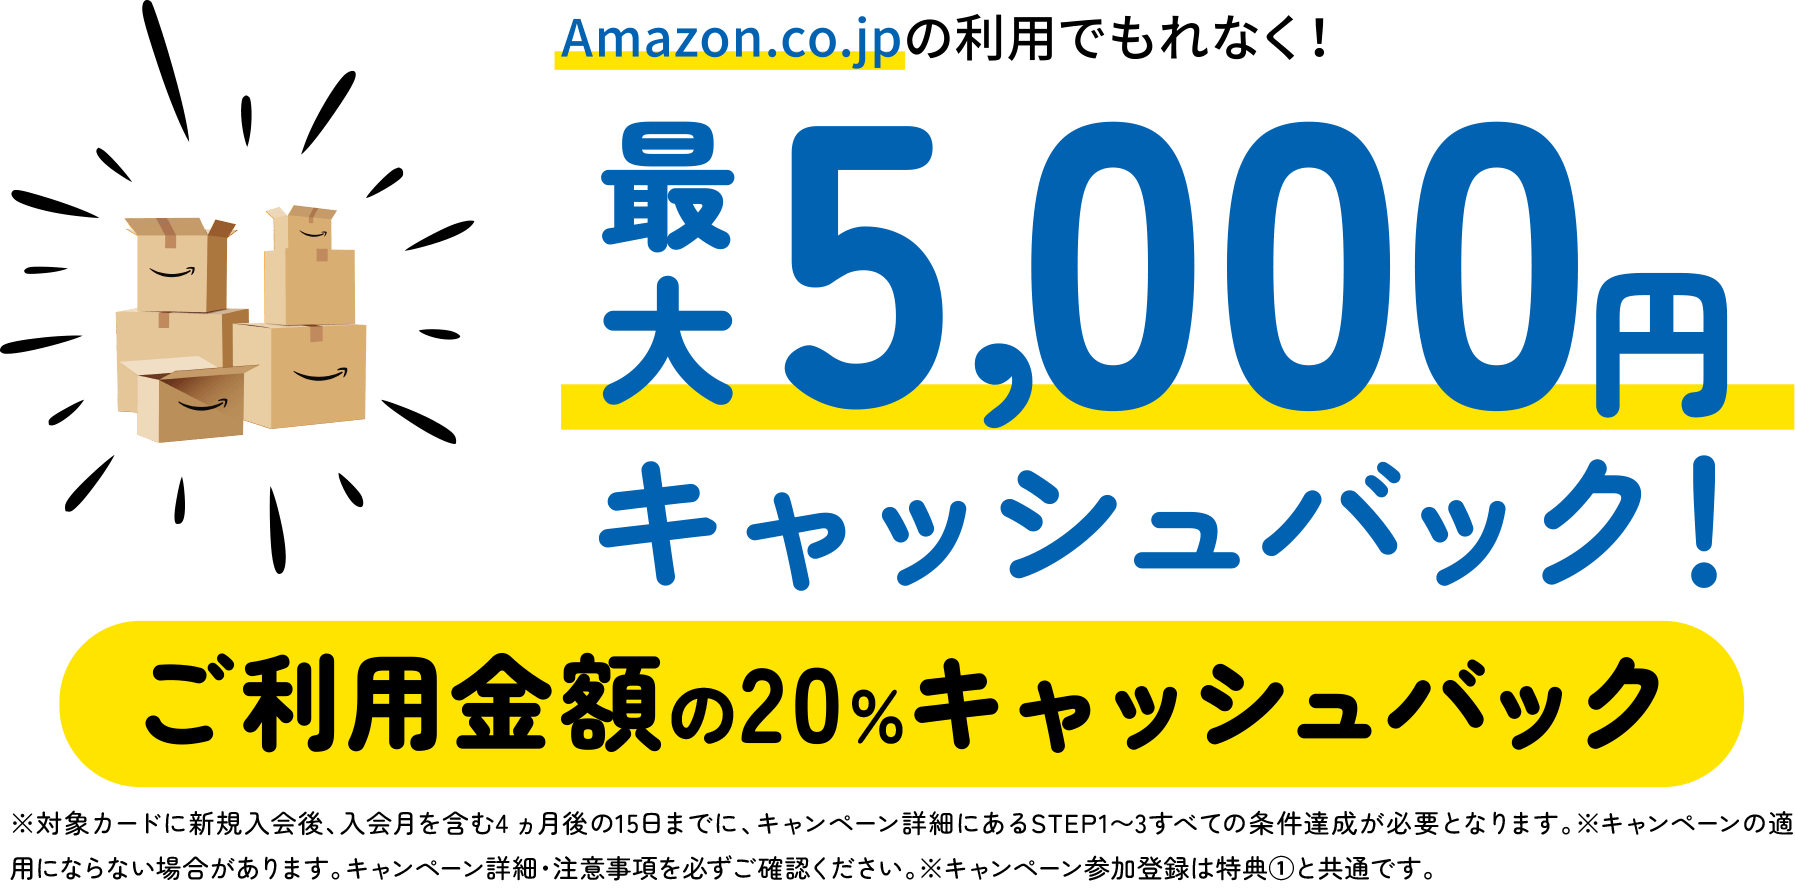 Amazon.co.jpの利用でもれなく！最大5,000円キャッシュバック！ご利用金額の20％キャッシュバック　※対象カードに新規入会後、入会月を含む4 ヵ月後の15日までに、キャンペーン詳細にあるSTEP1〜3すべての条件達成が必要となります。※キャンペーンの適用にならない場合があります。キャンペーン詳細・注意事項を必ずご確認ください。※キャンペーン参加登録は特典①と共通です。